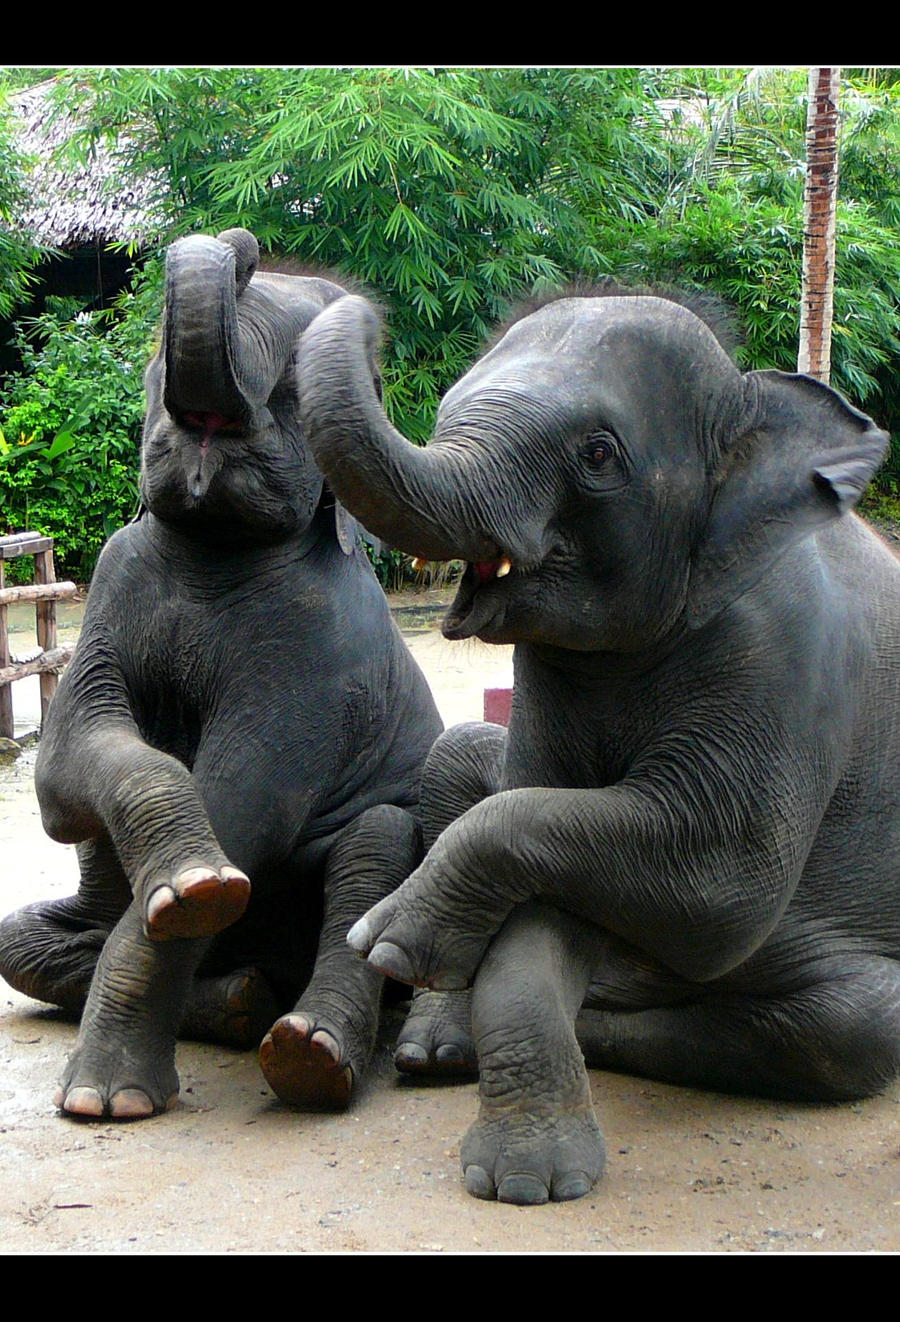 Elephants by NoisyPinkBubbles